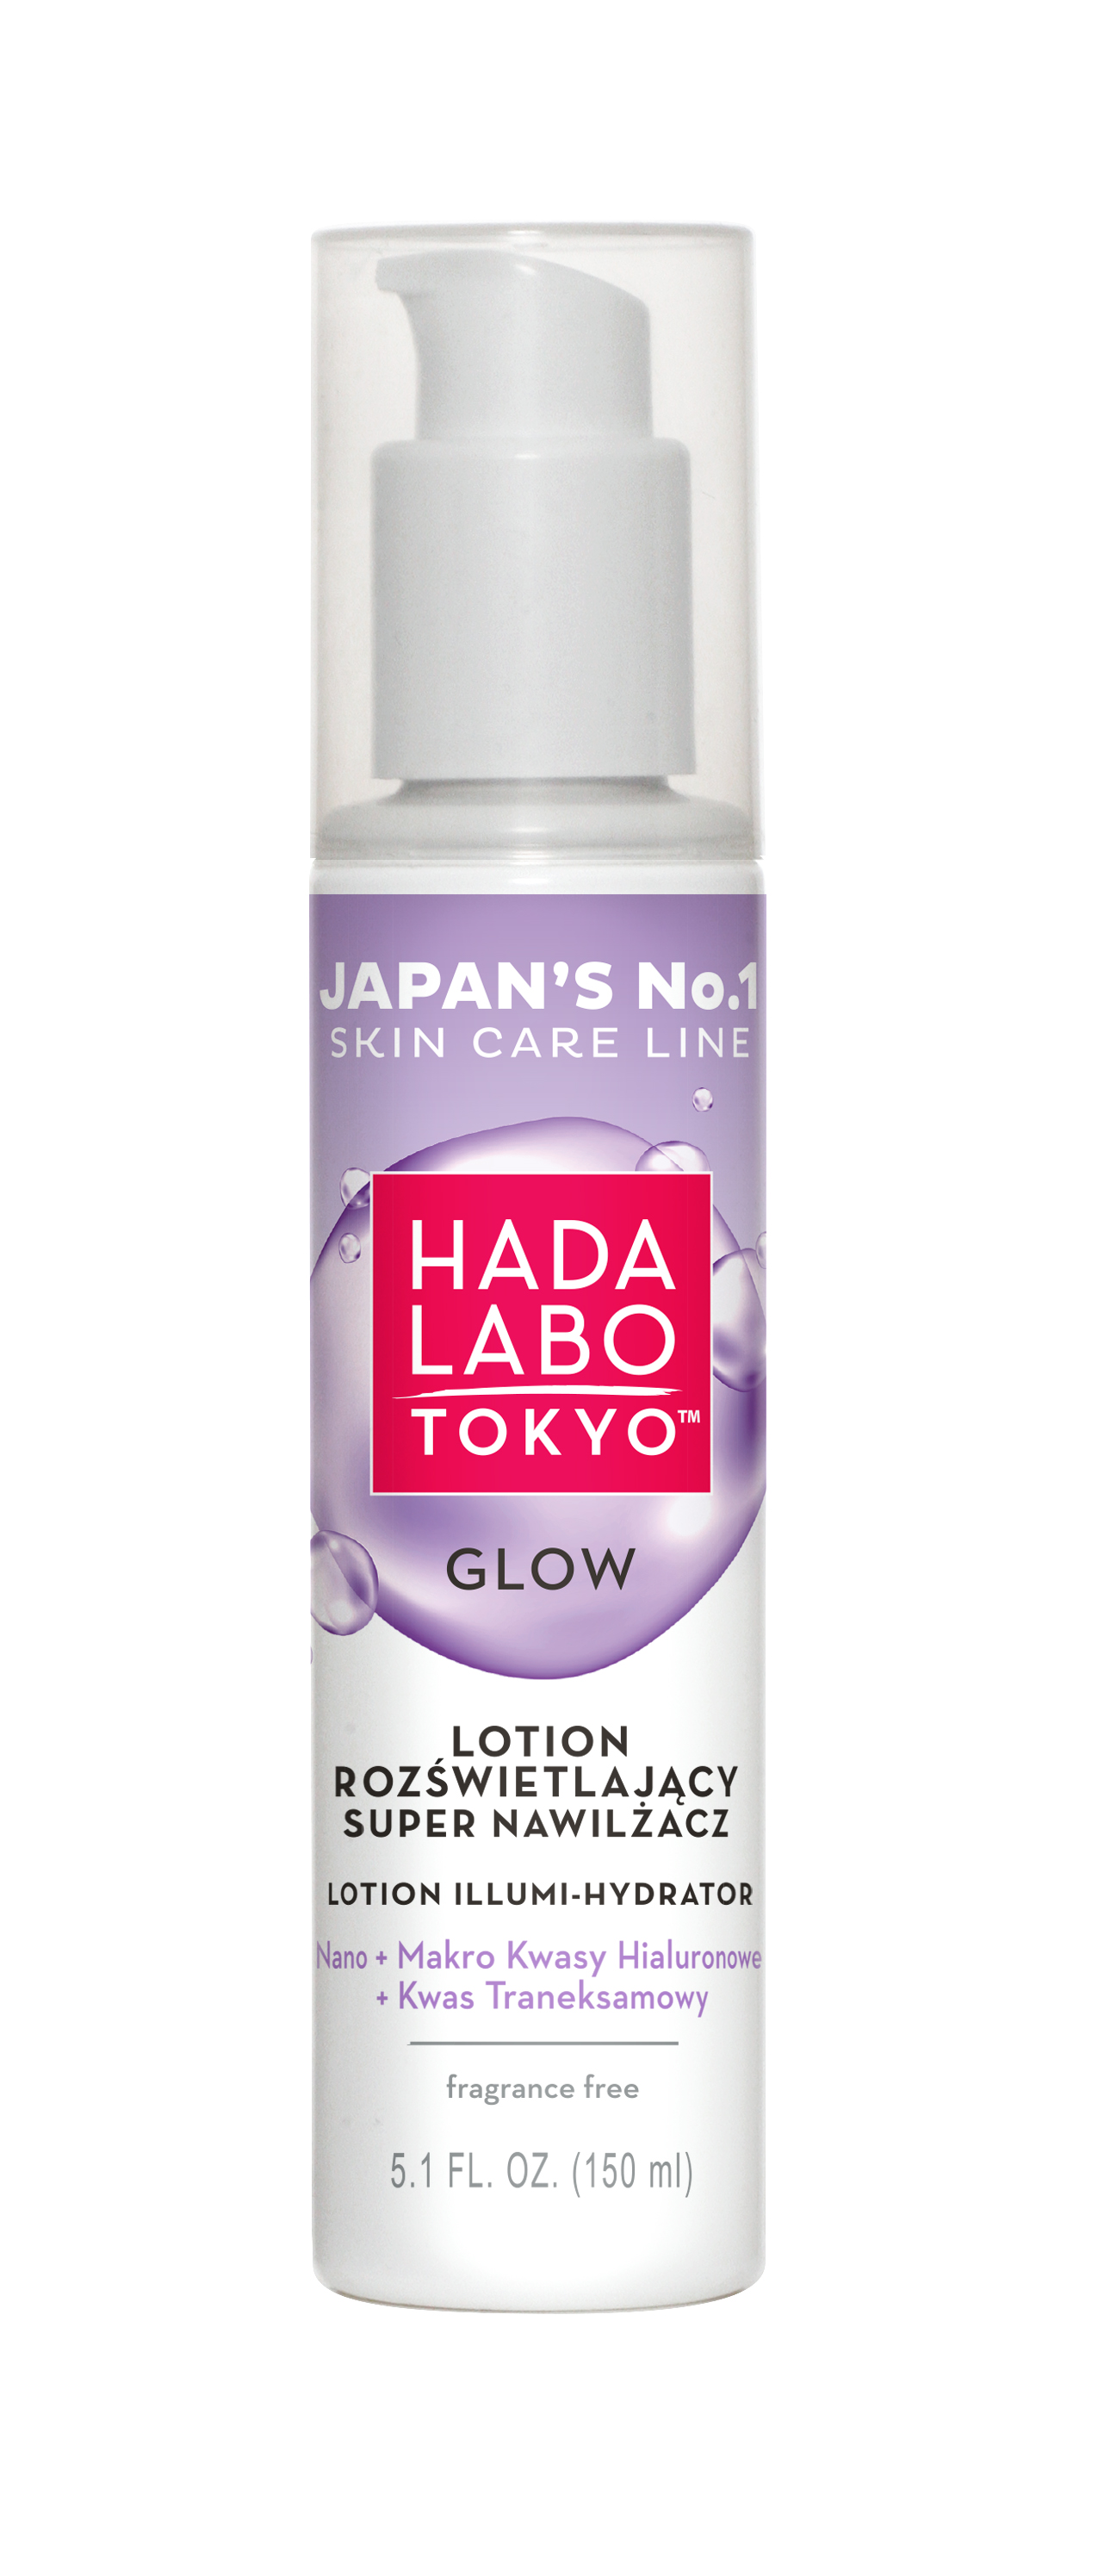 HADA LABO TOKYO GLOW Lotion Rozświetlający Super-nawilżacz